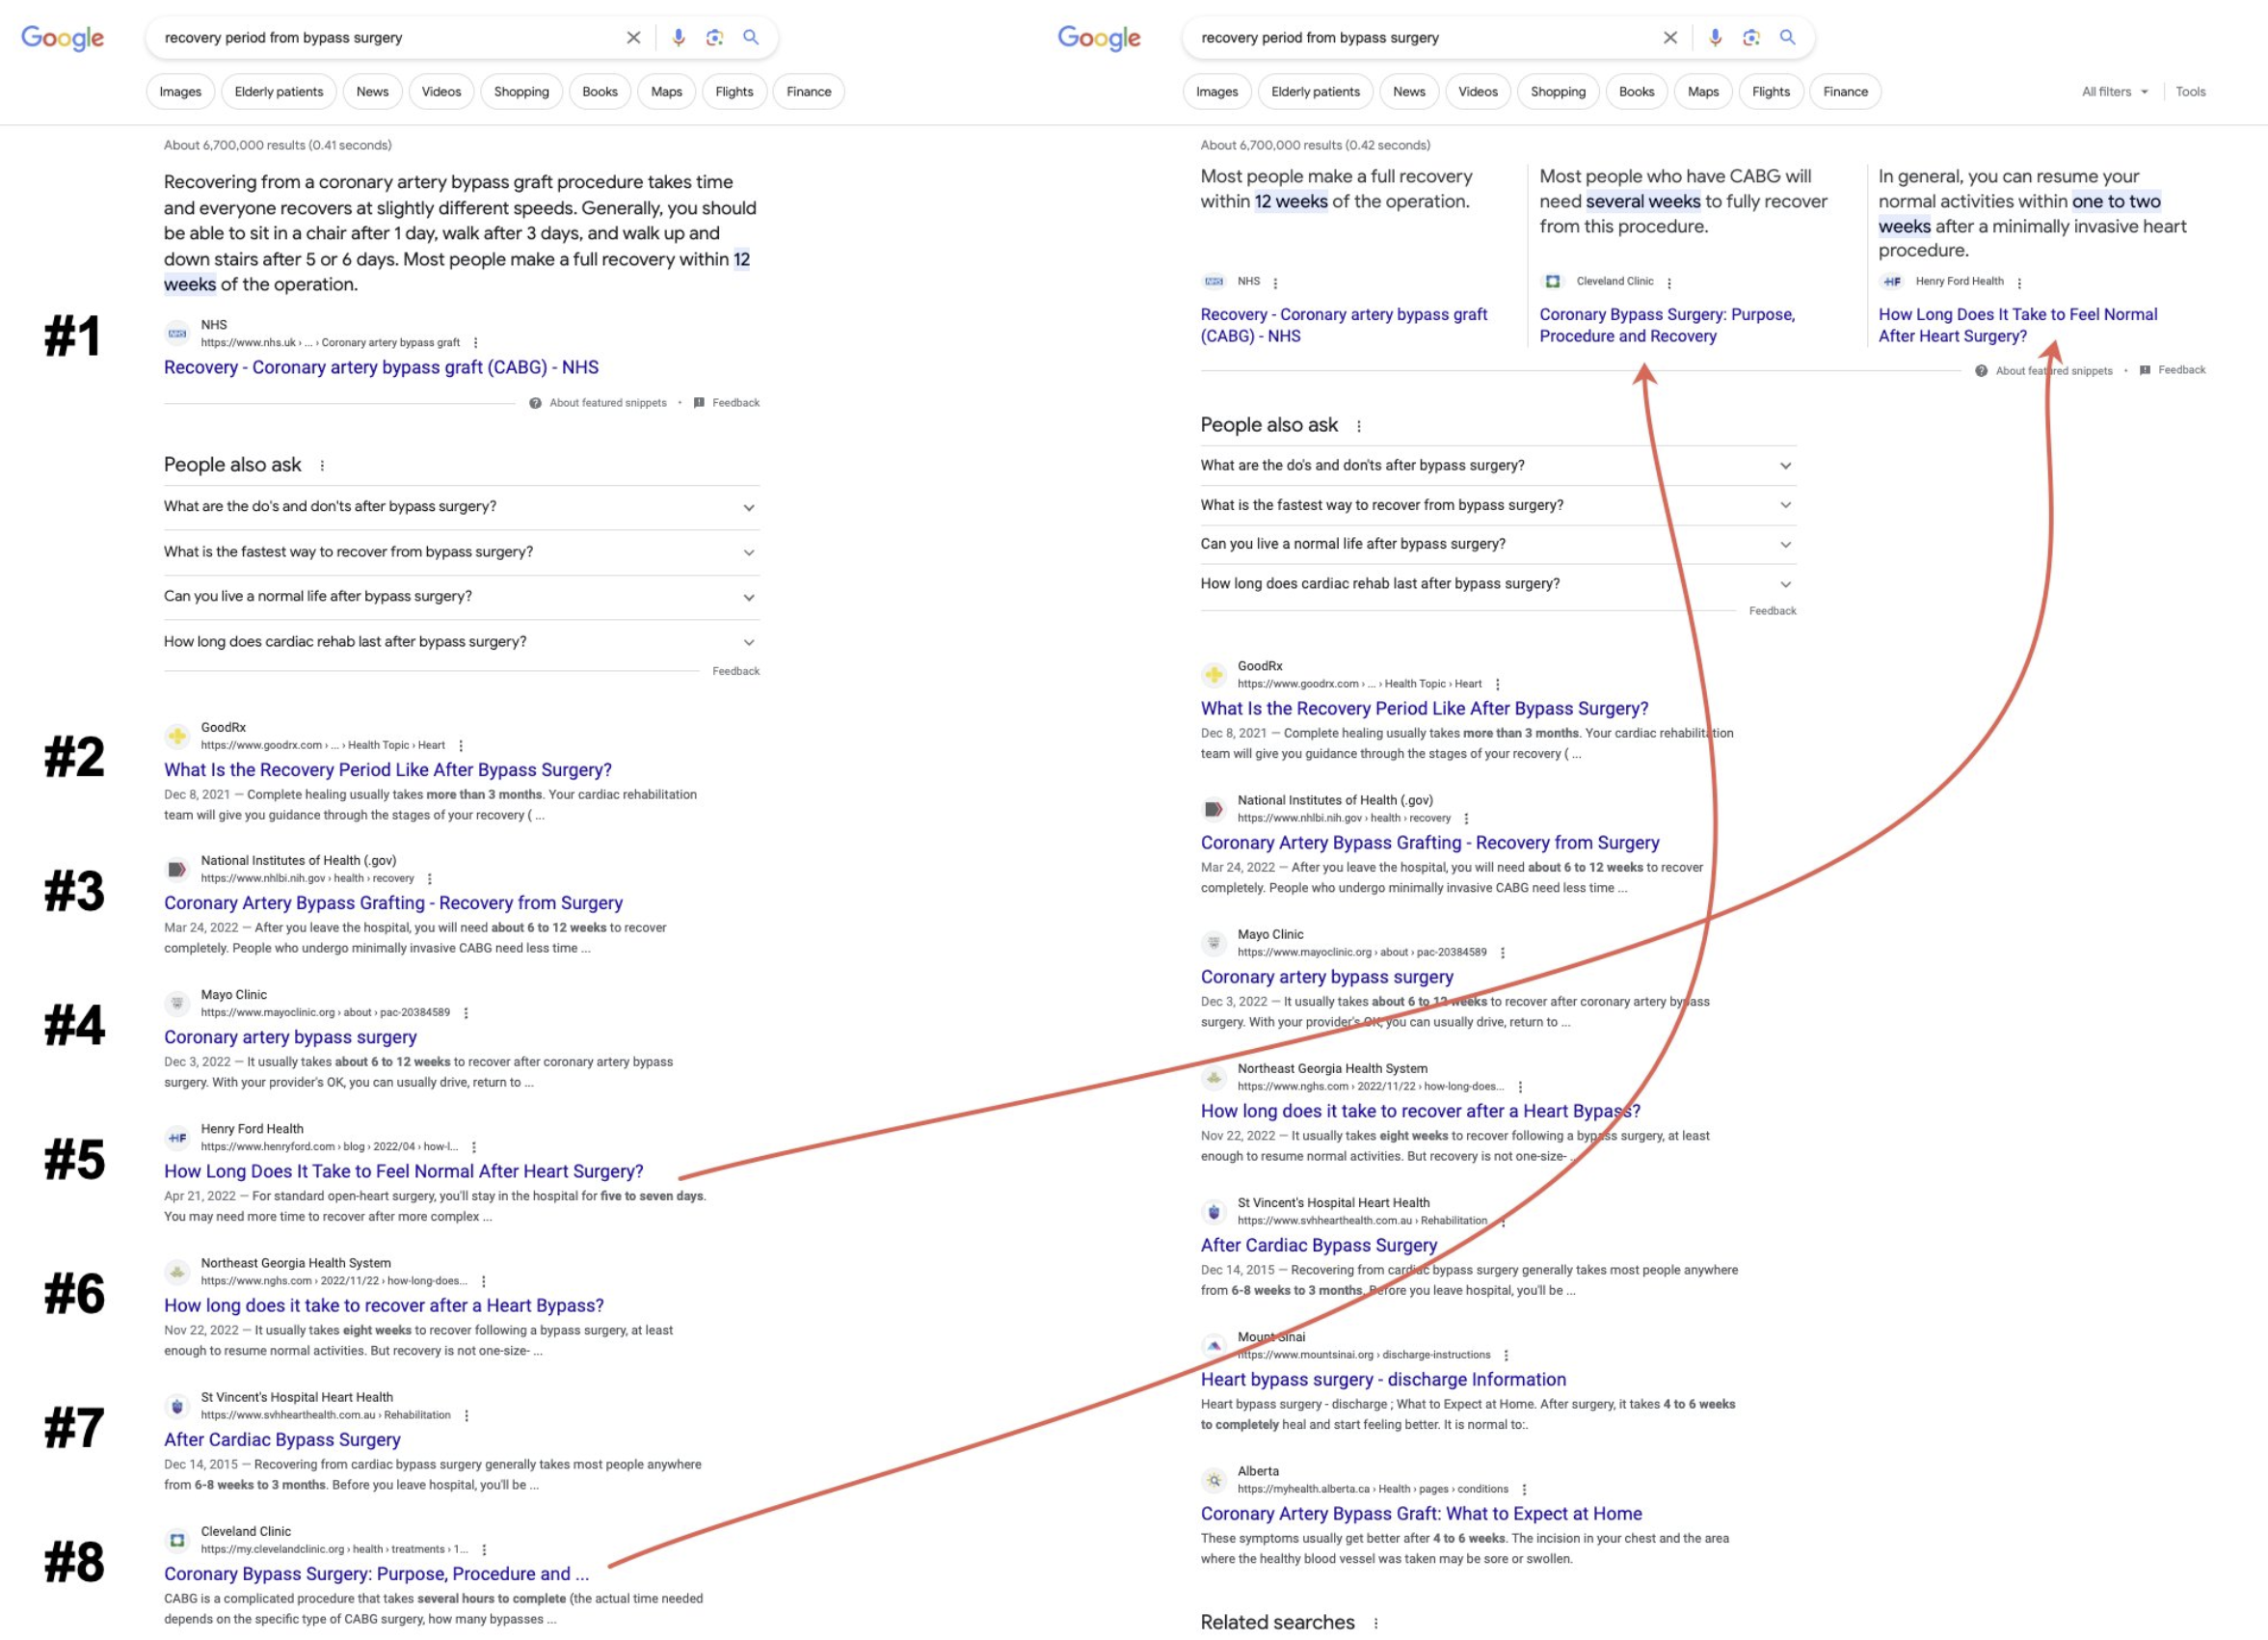 Google: Vergleich zweier Suchergebnisseiten - eine mit normalem Featured Snippet, eine mit Triple Featured Snippet